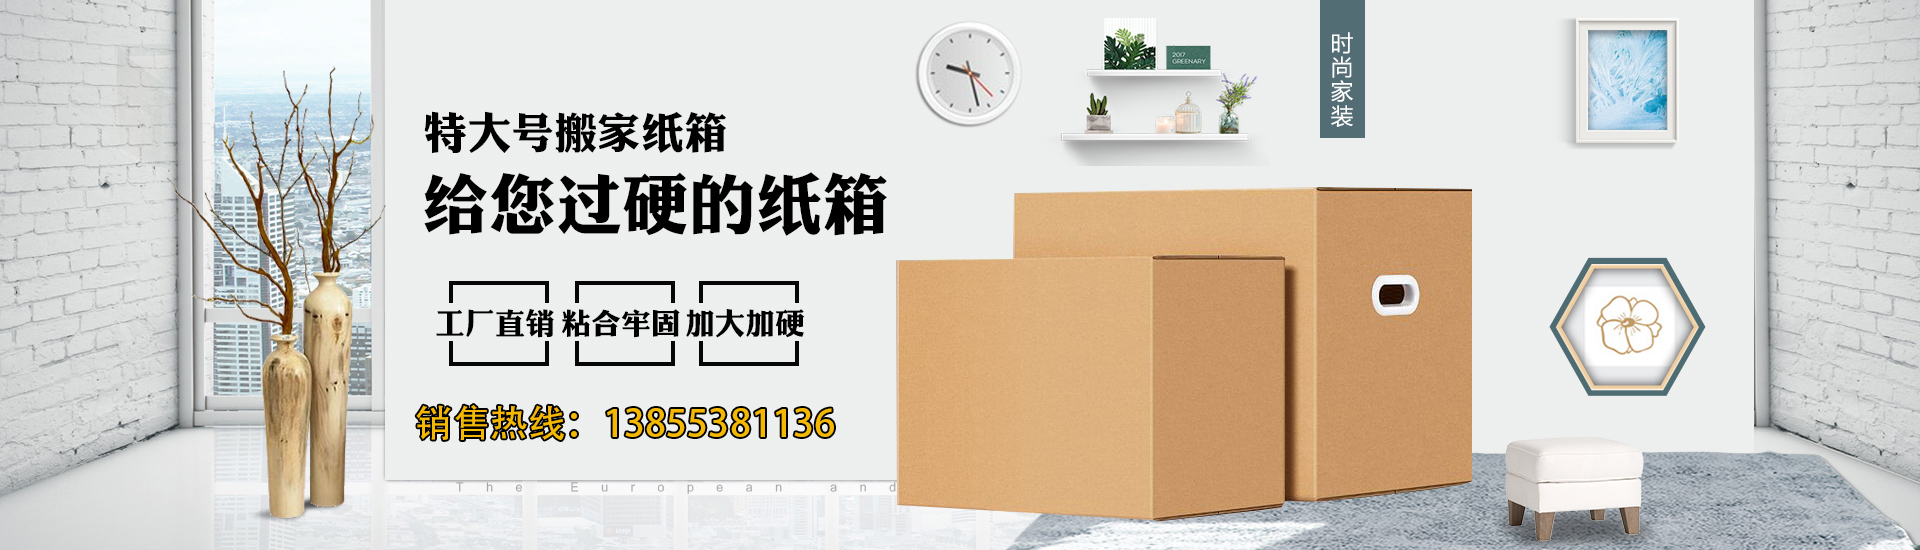 芜湖市安龙印务包装有限责任公司